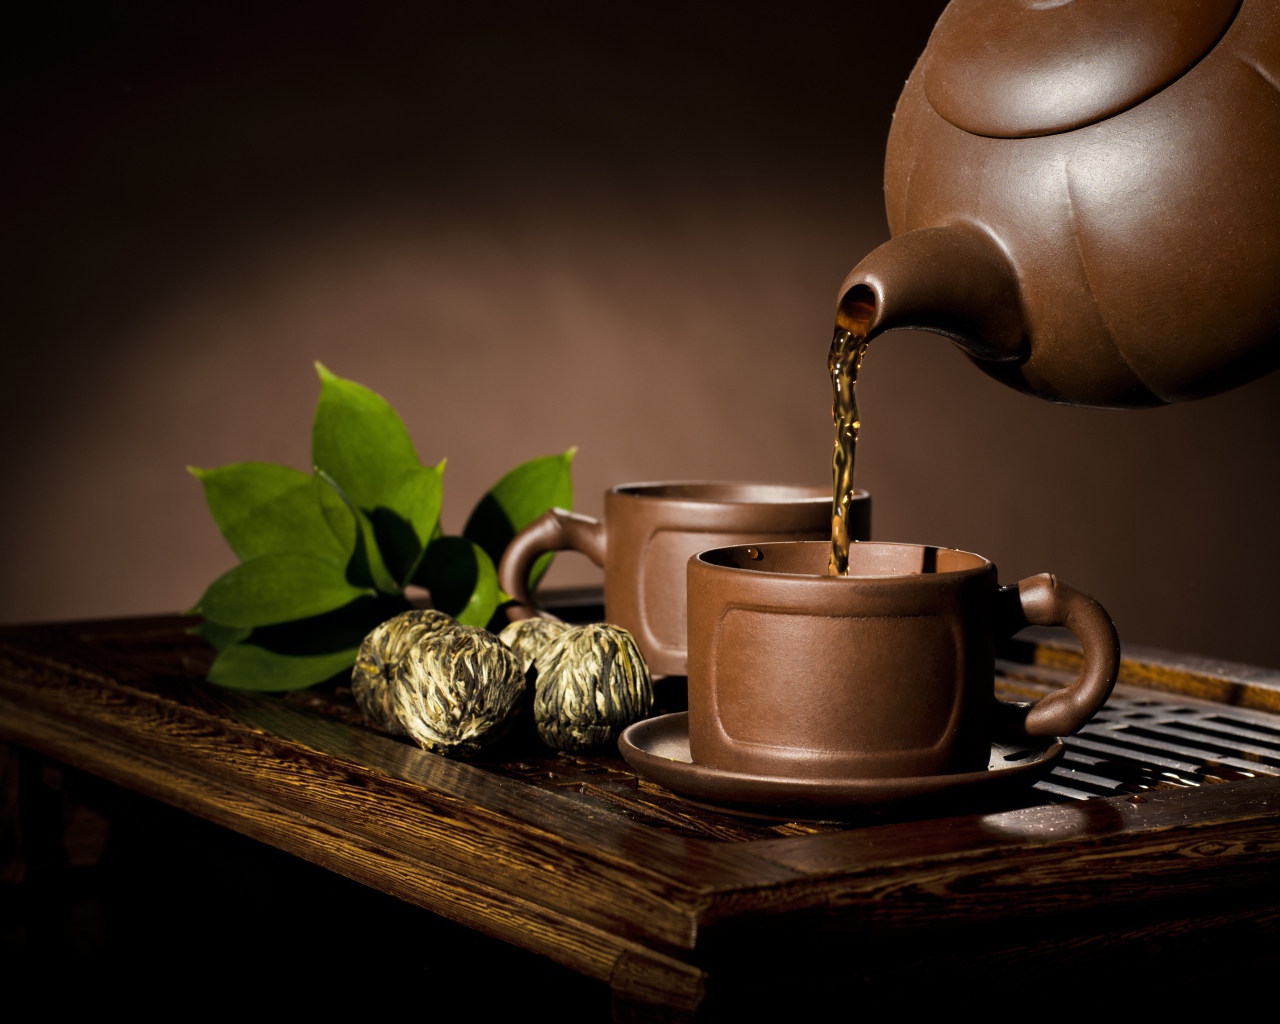 Чай наливают из чайника в коричневую чашку